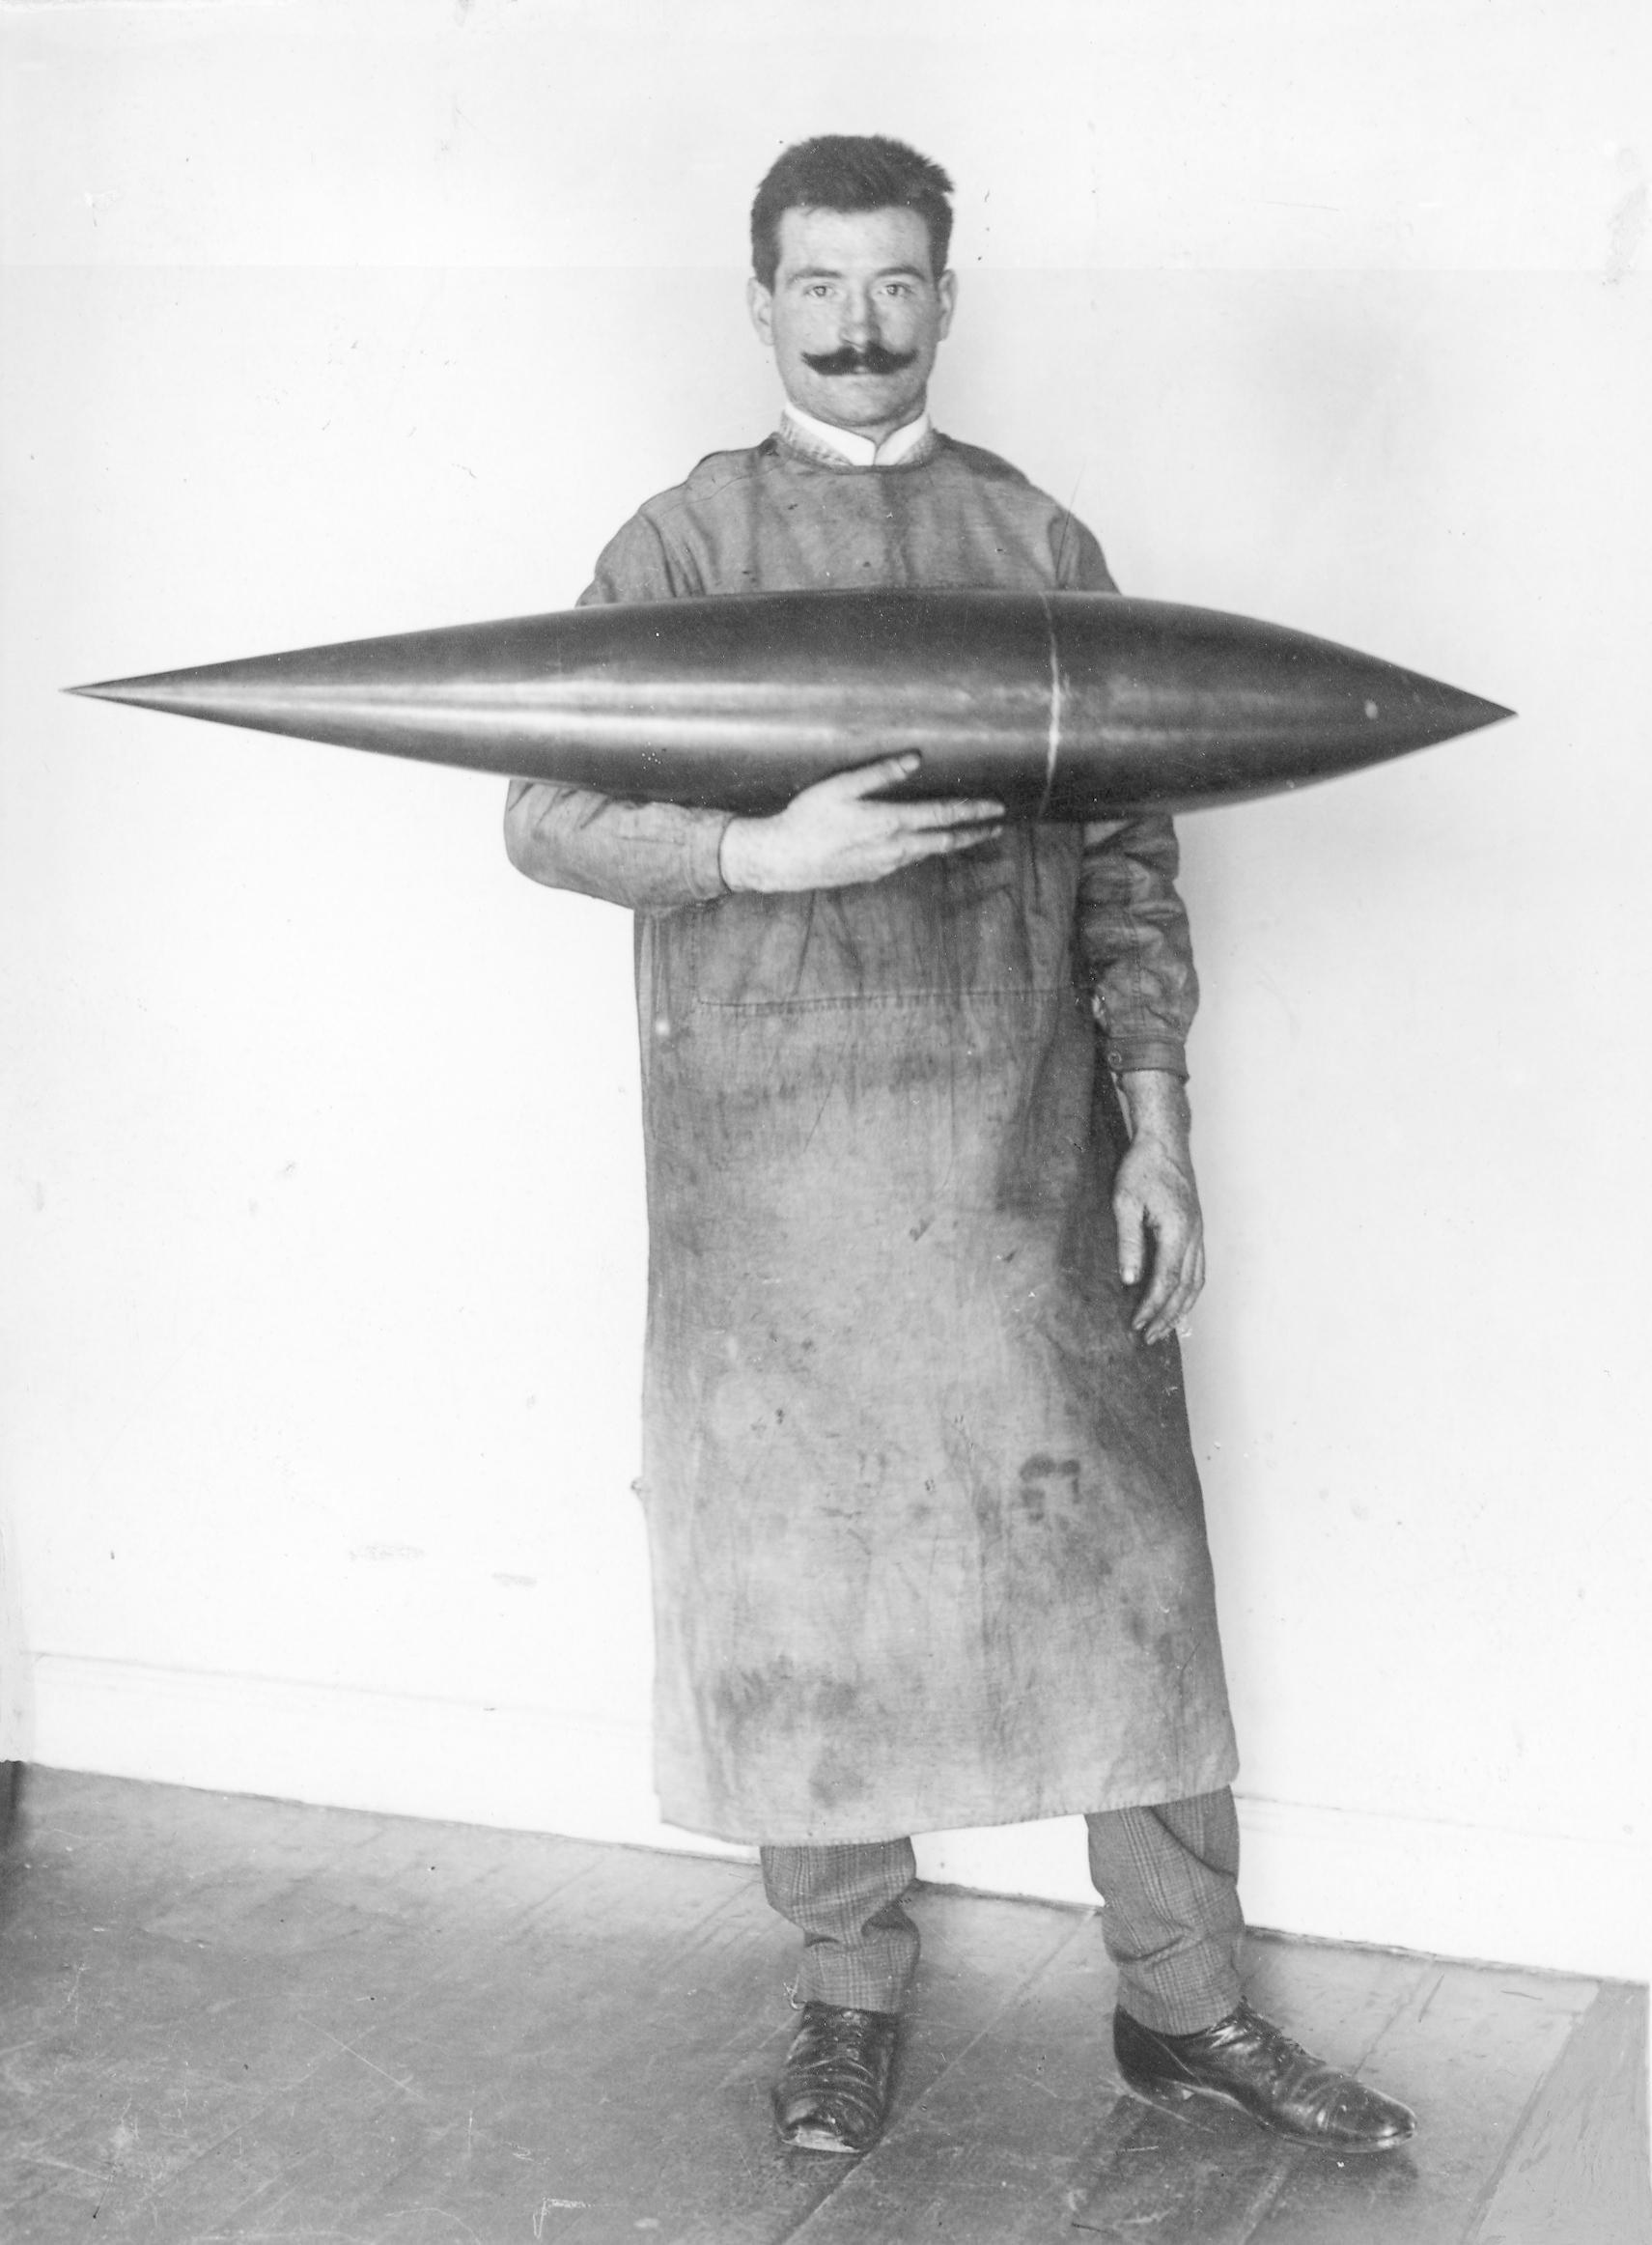 Modell eines Luftschiffkörpers mit seinem Verfertiger Otto Kreutz